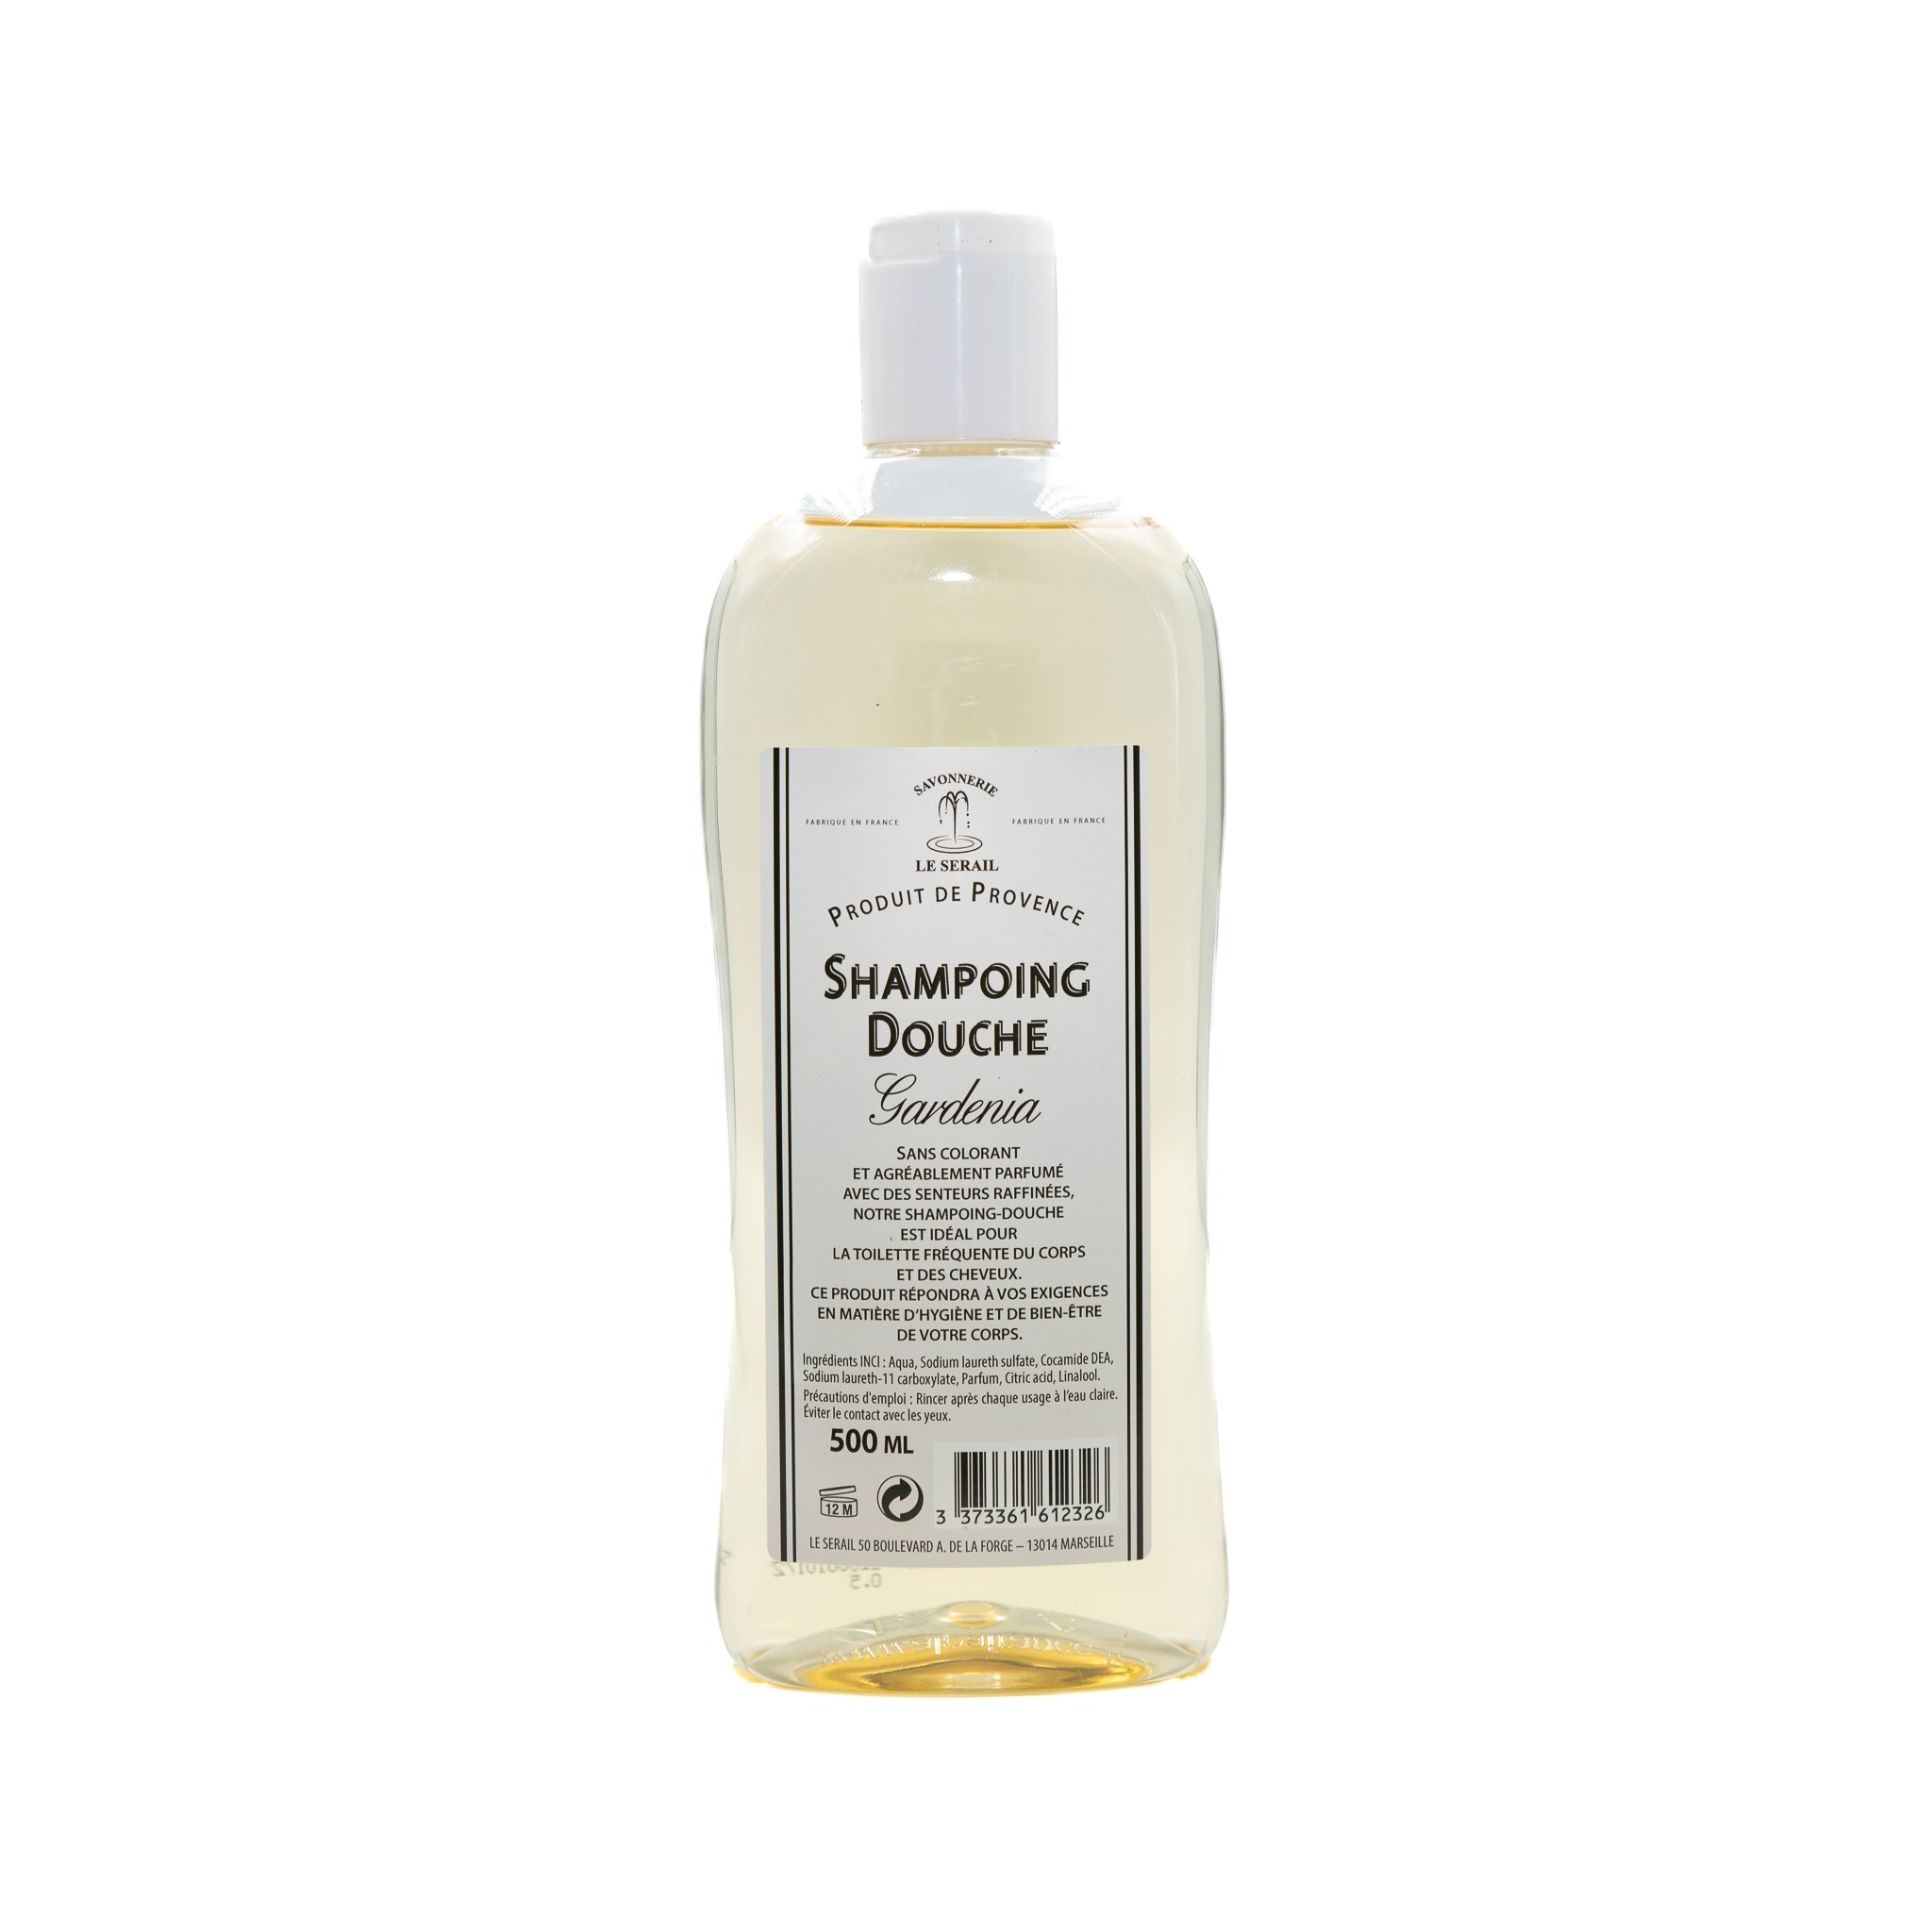 Shampoing douche Gardénia Bergamote Le Sérail 500 ml